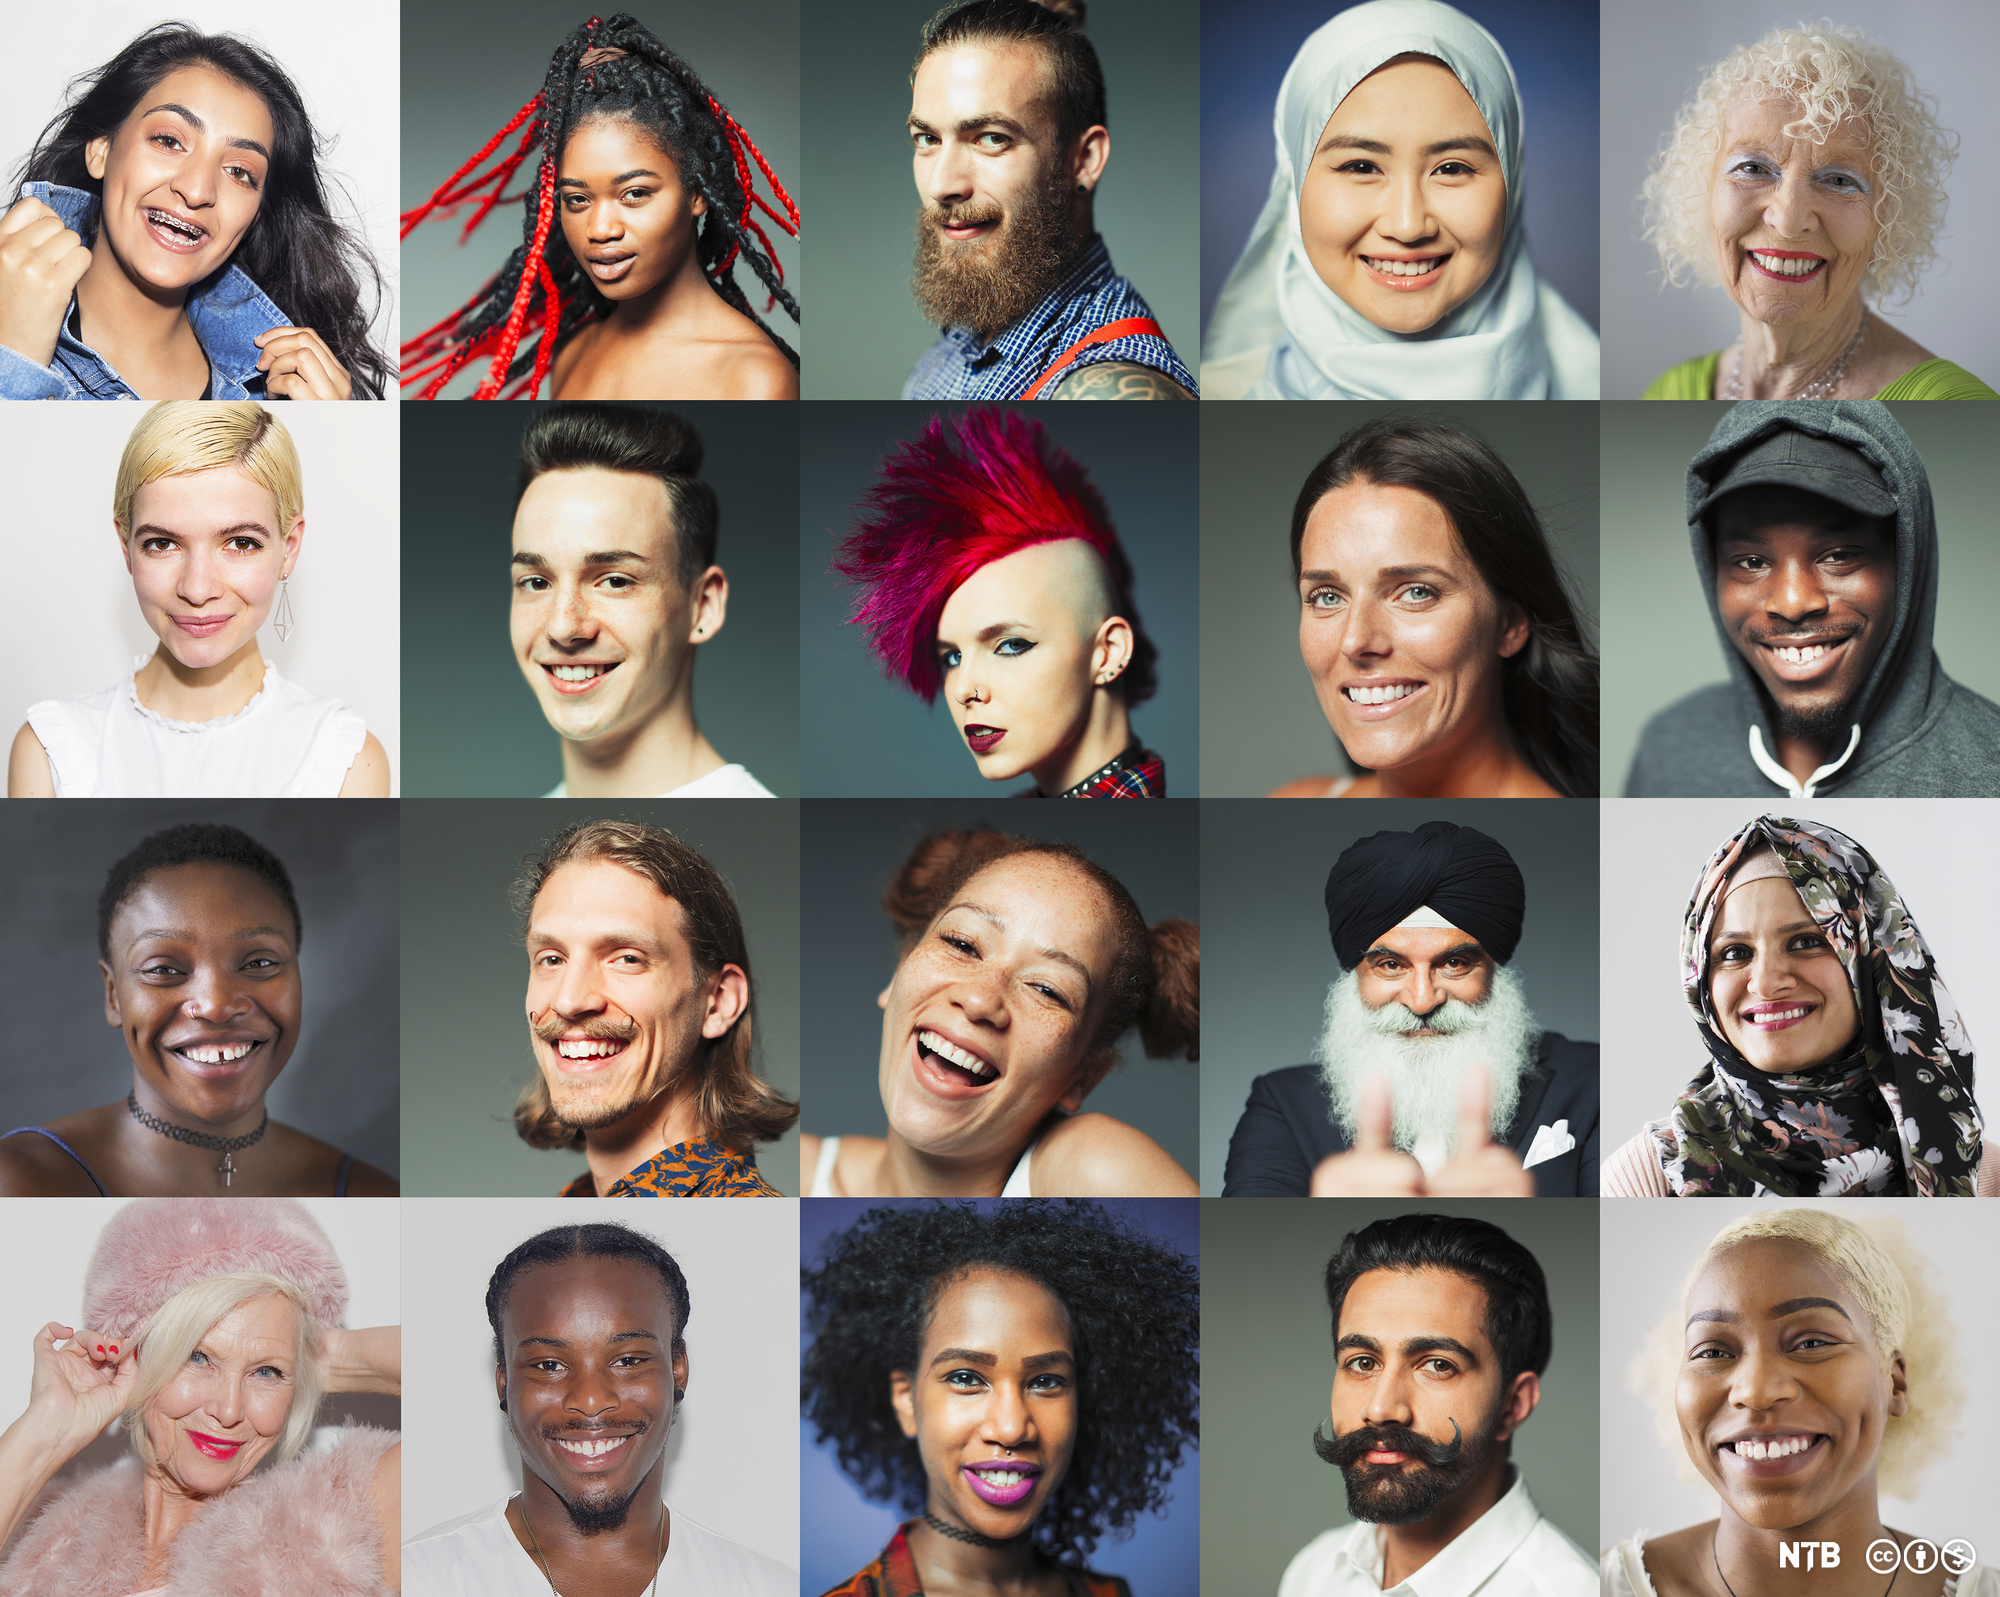 Portrett av mange forskjellige menneske med blant anna ulik hudfarge, hårfrisyre, klesdrakt og ulikt ansiktsuttrykk. Foto.